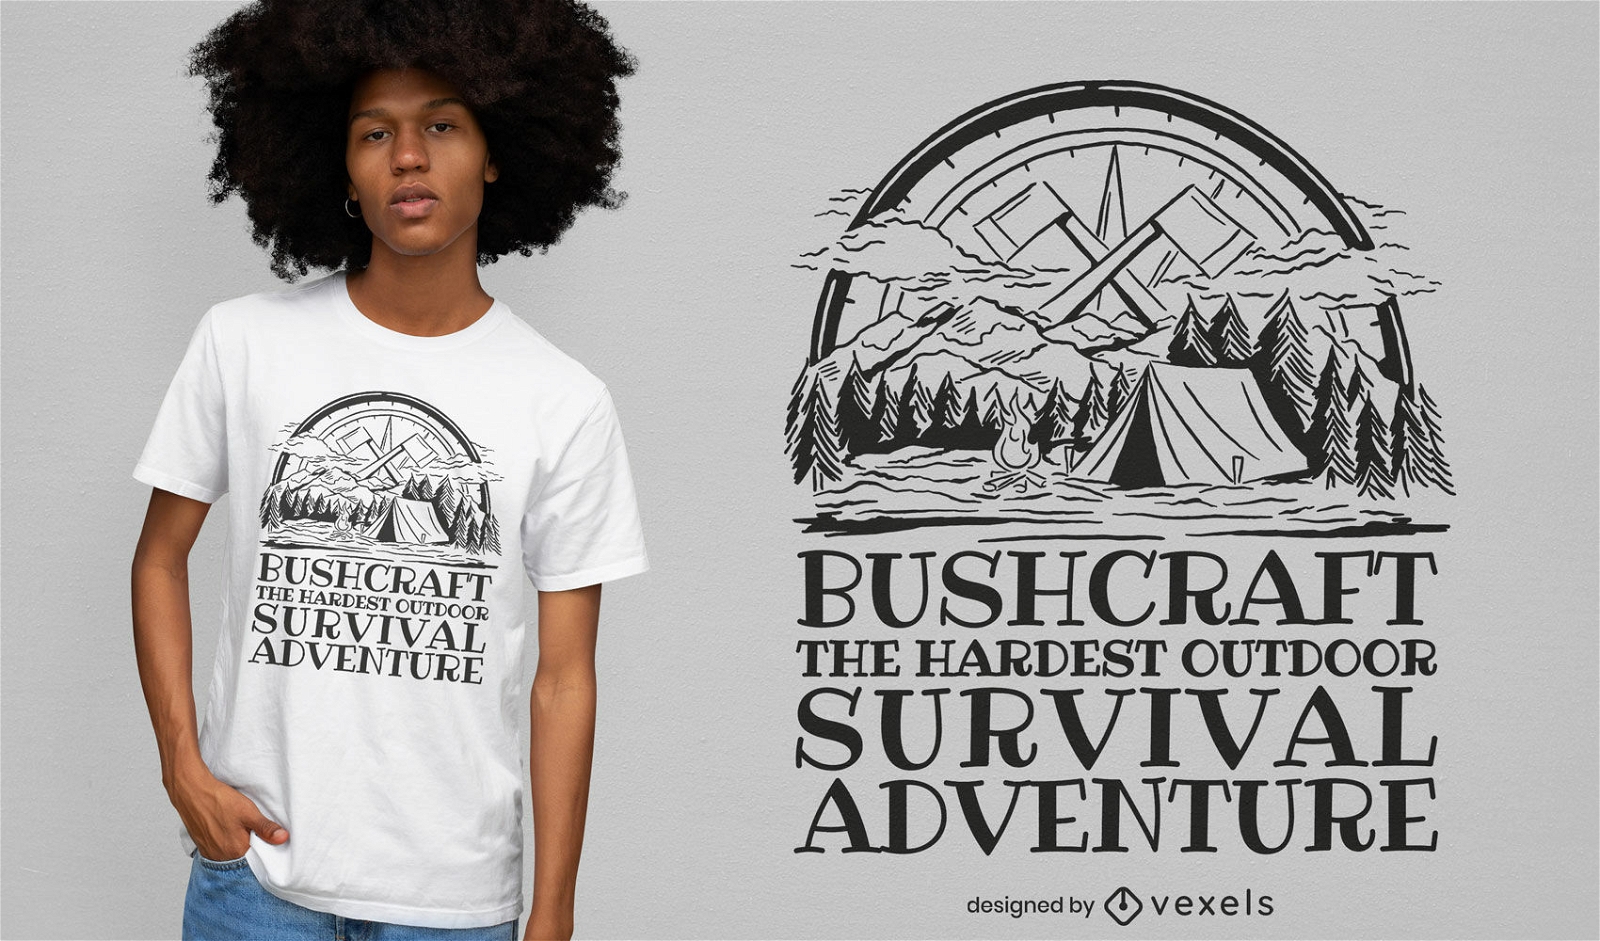 Dise?o de camiseta de campamento de aventura de supervivencia.